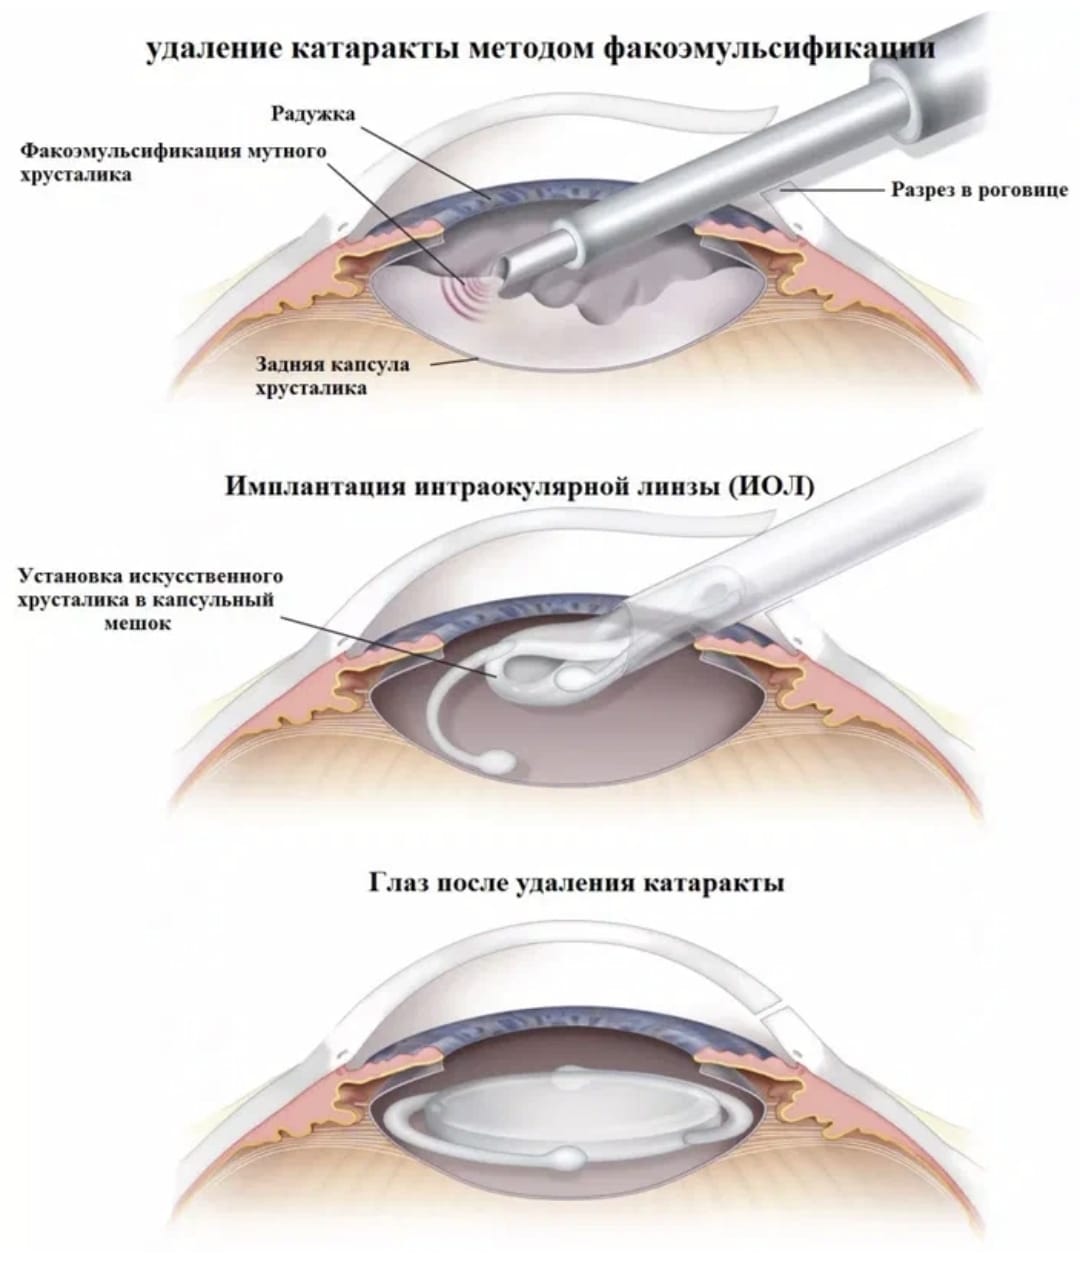 Как себя вести после операции катаракты. Ультразвуковая факоэмульсификация катаракты этапы. Ультразвуковая факоэмульсификация с имплантацией ИОЛ. Техника факоэмульсификации катаракты с имплантацией ИОЛ. Факоэмульсификация катаракты этапы операции.